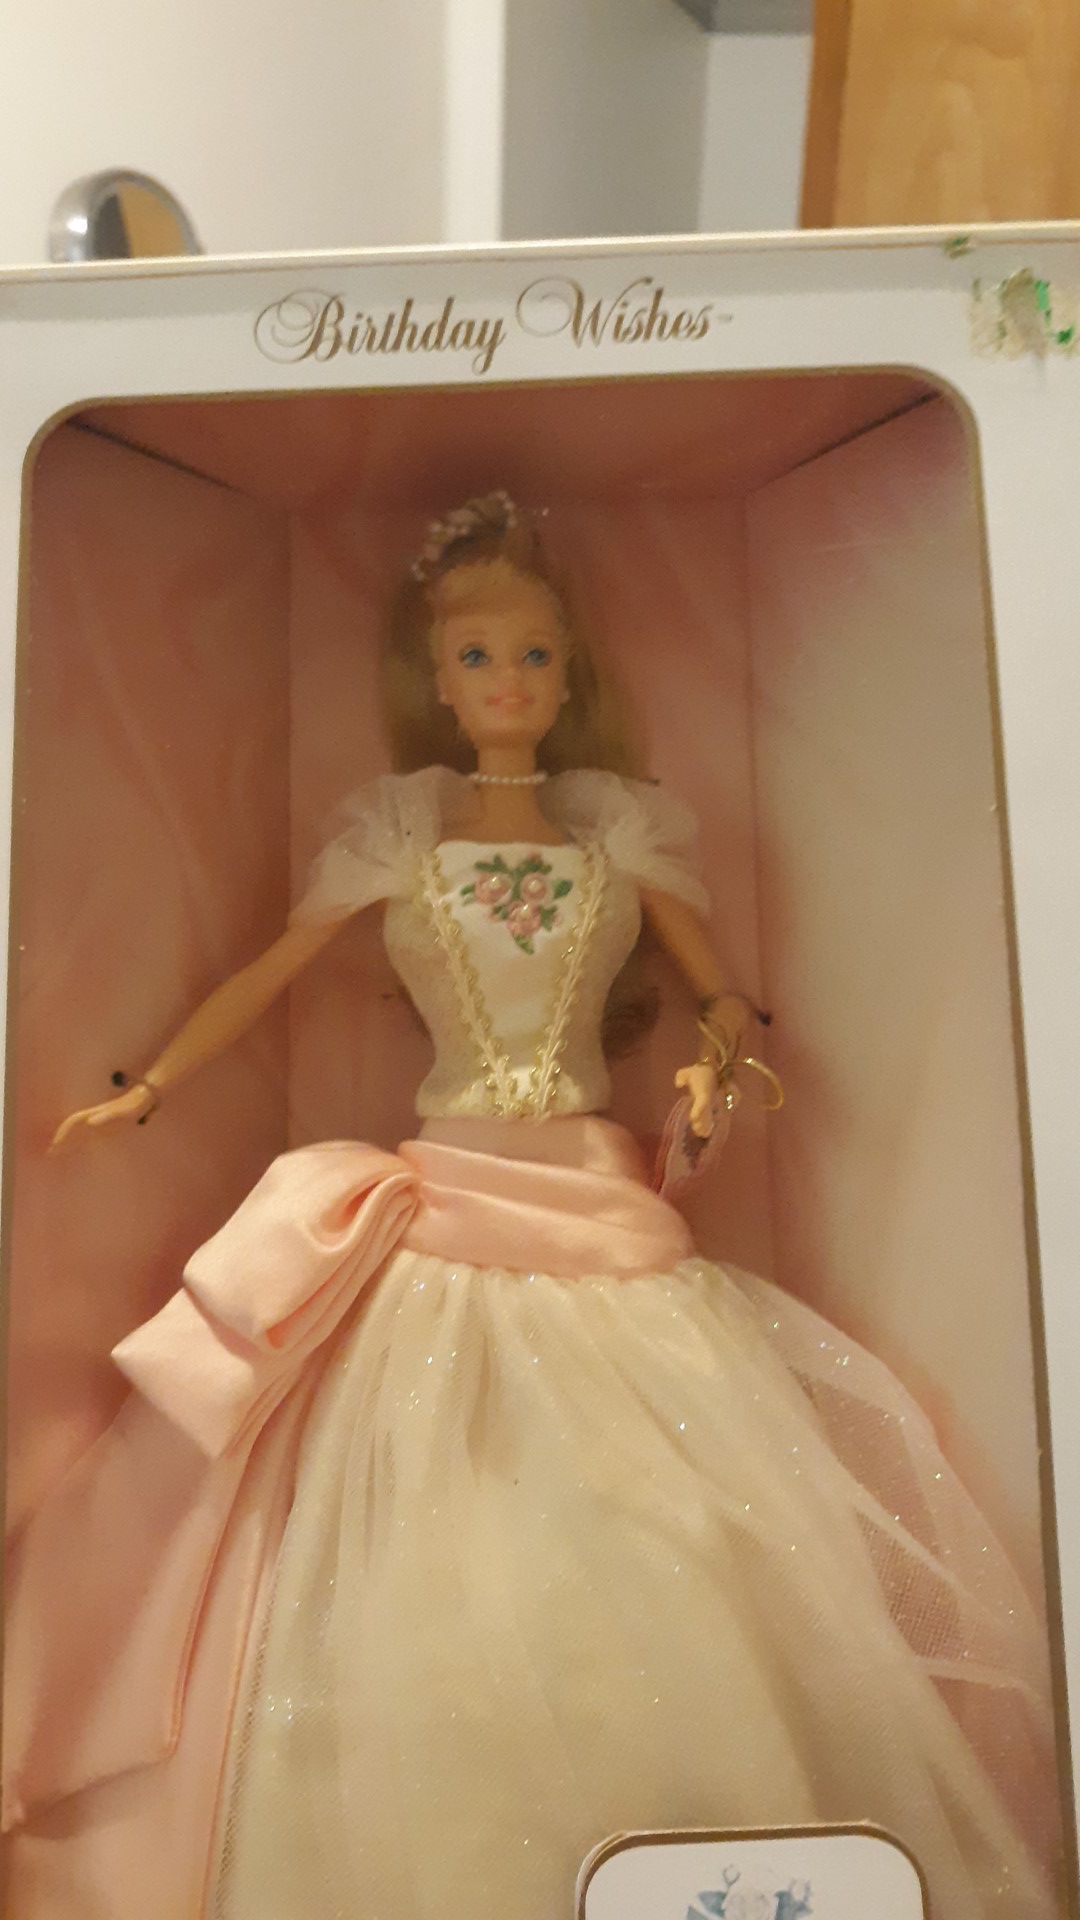 1998 birthday wishes Barbie